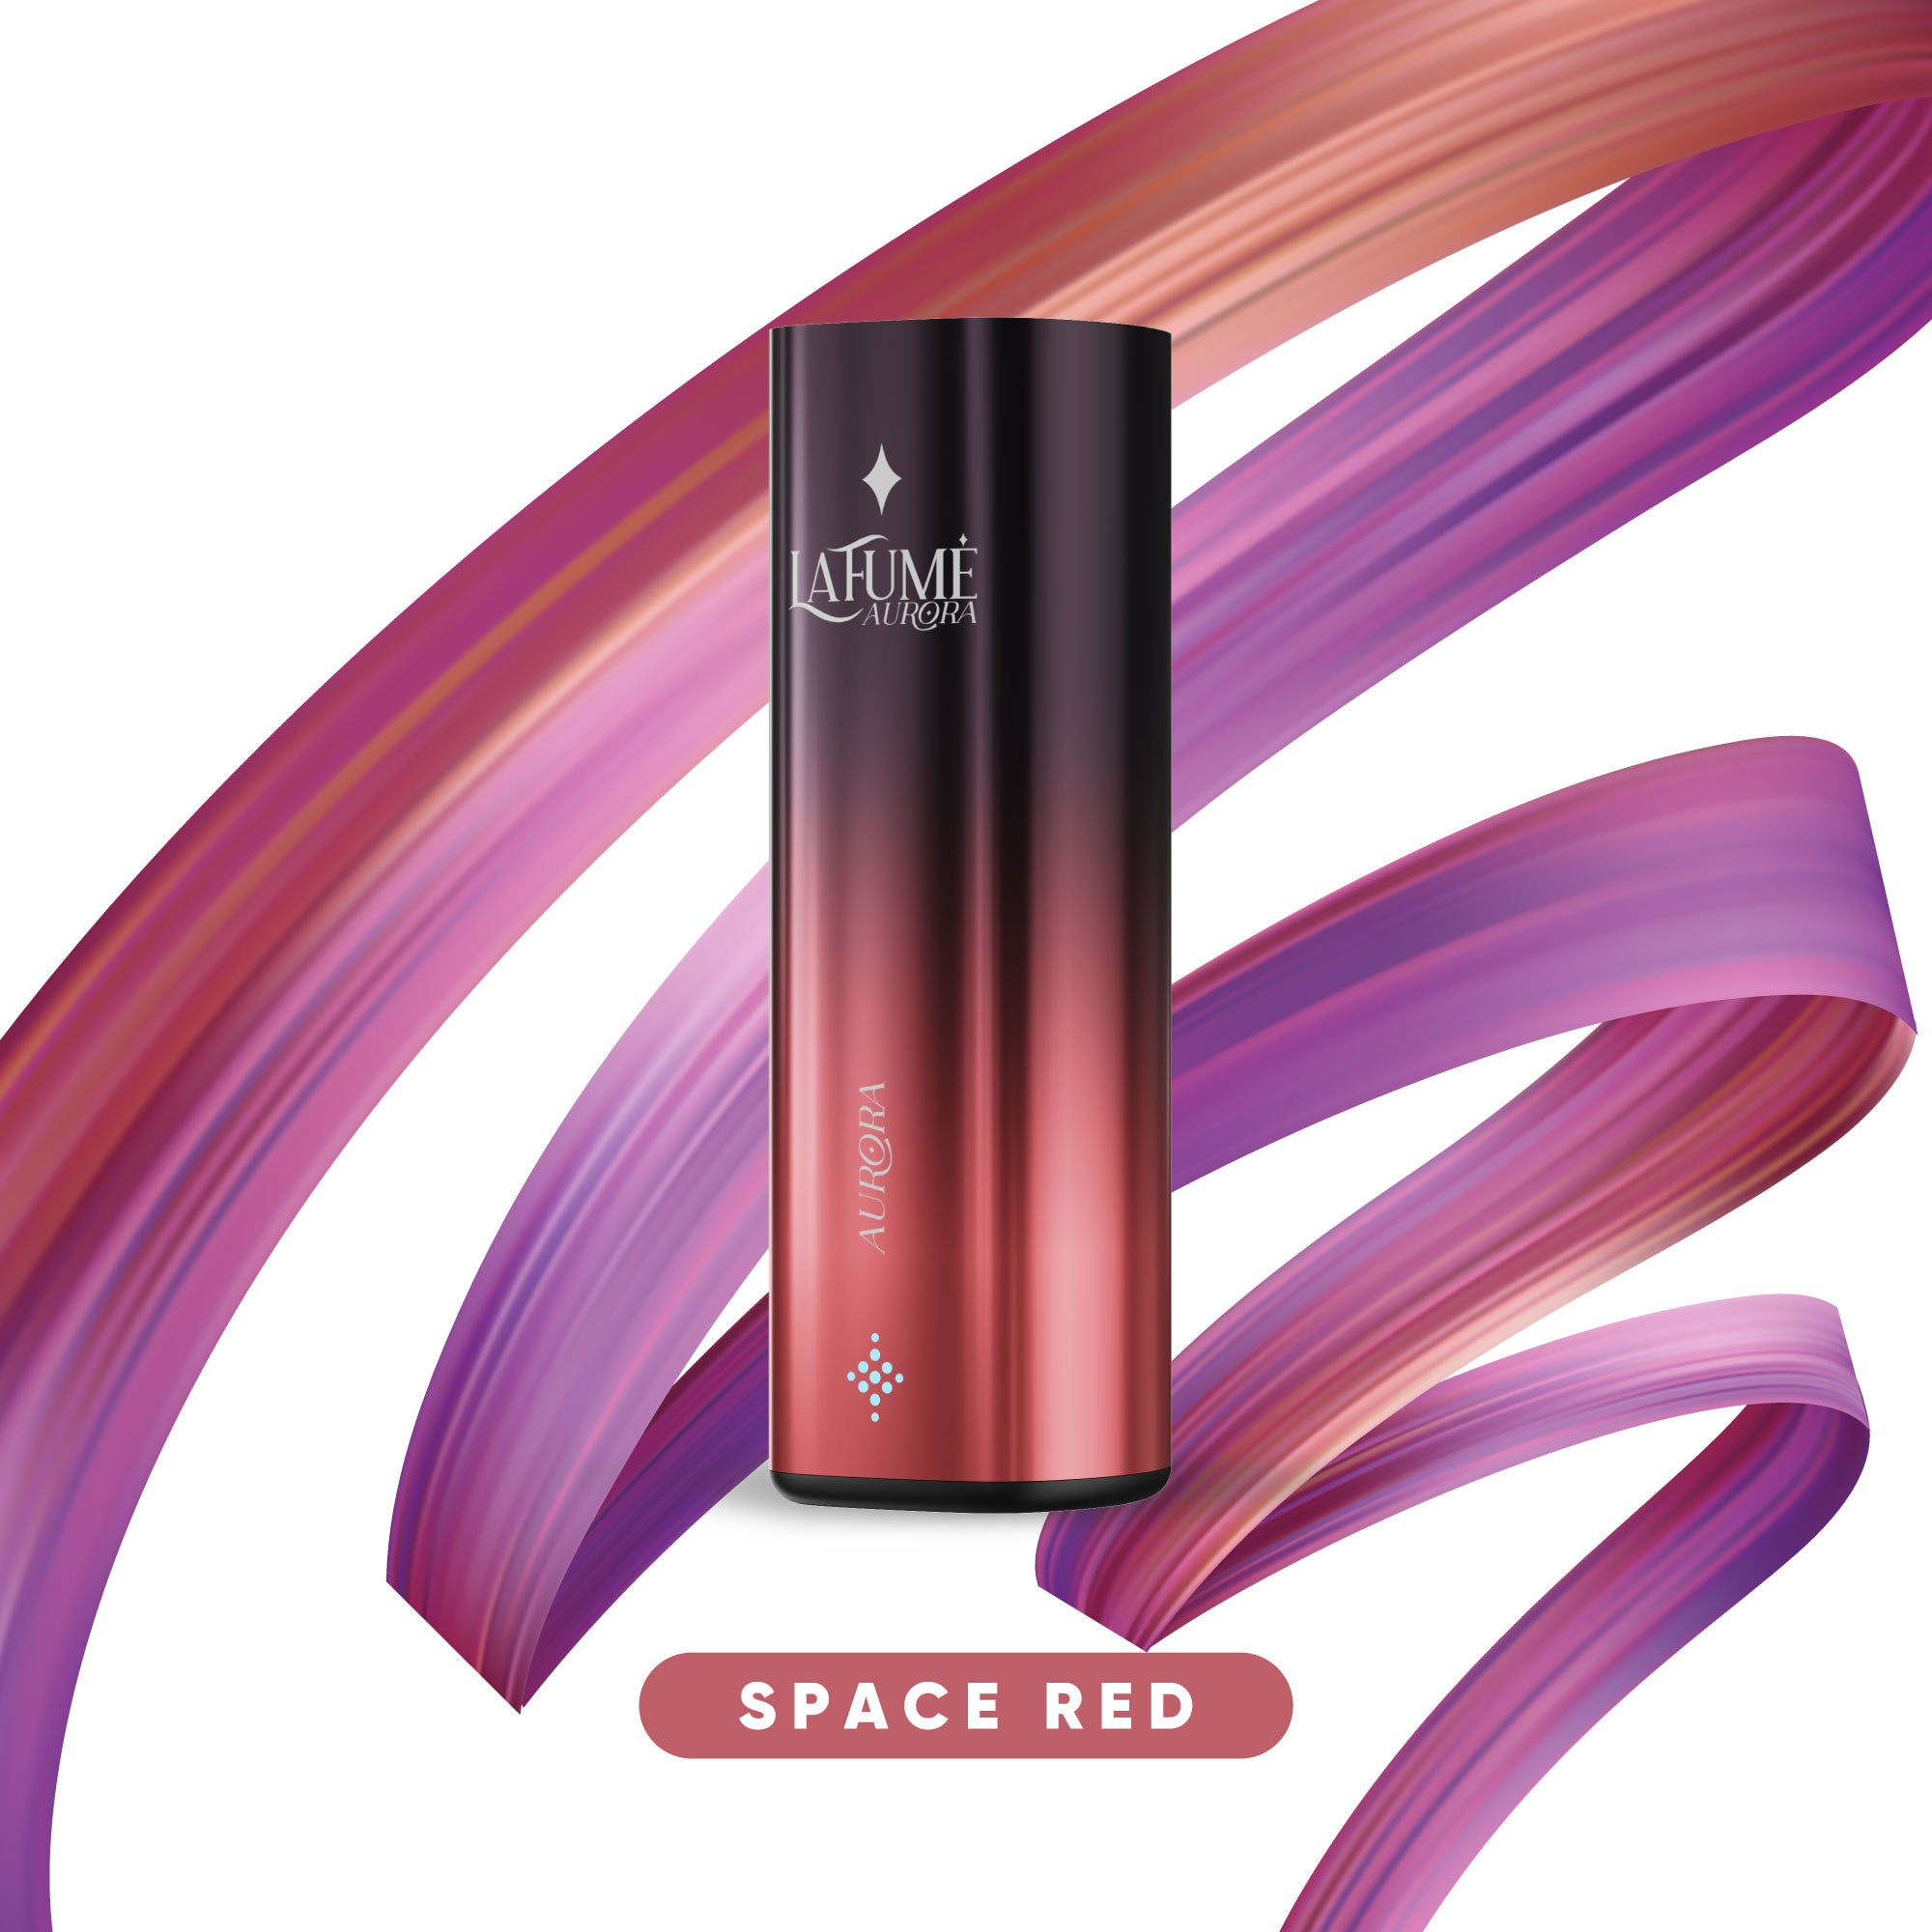 La Fume Aurora - Basisgerät Space Red